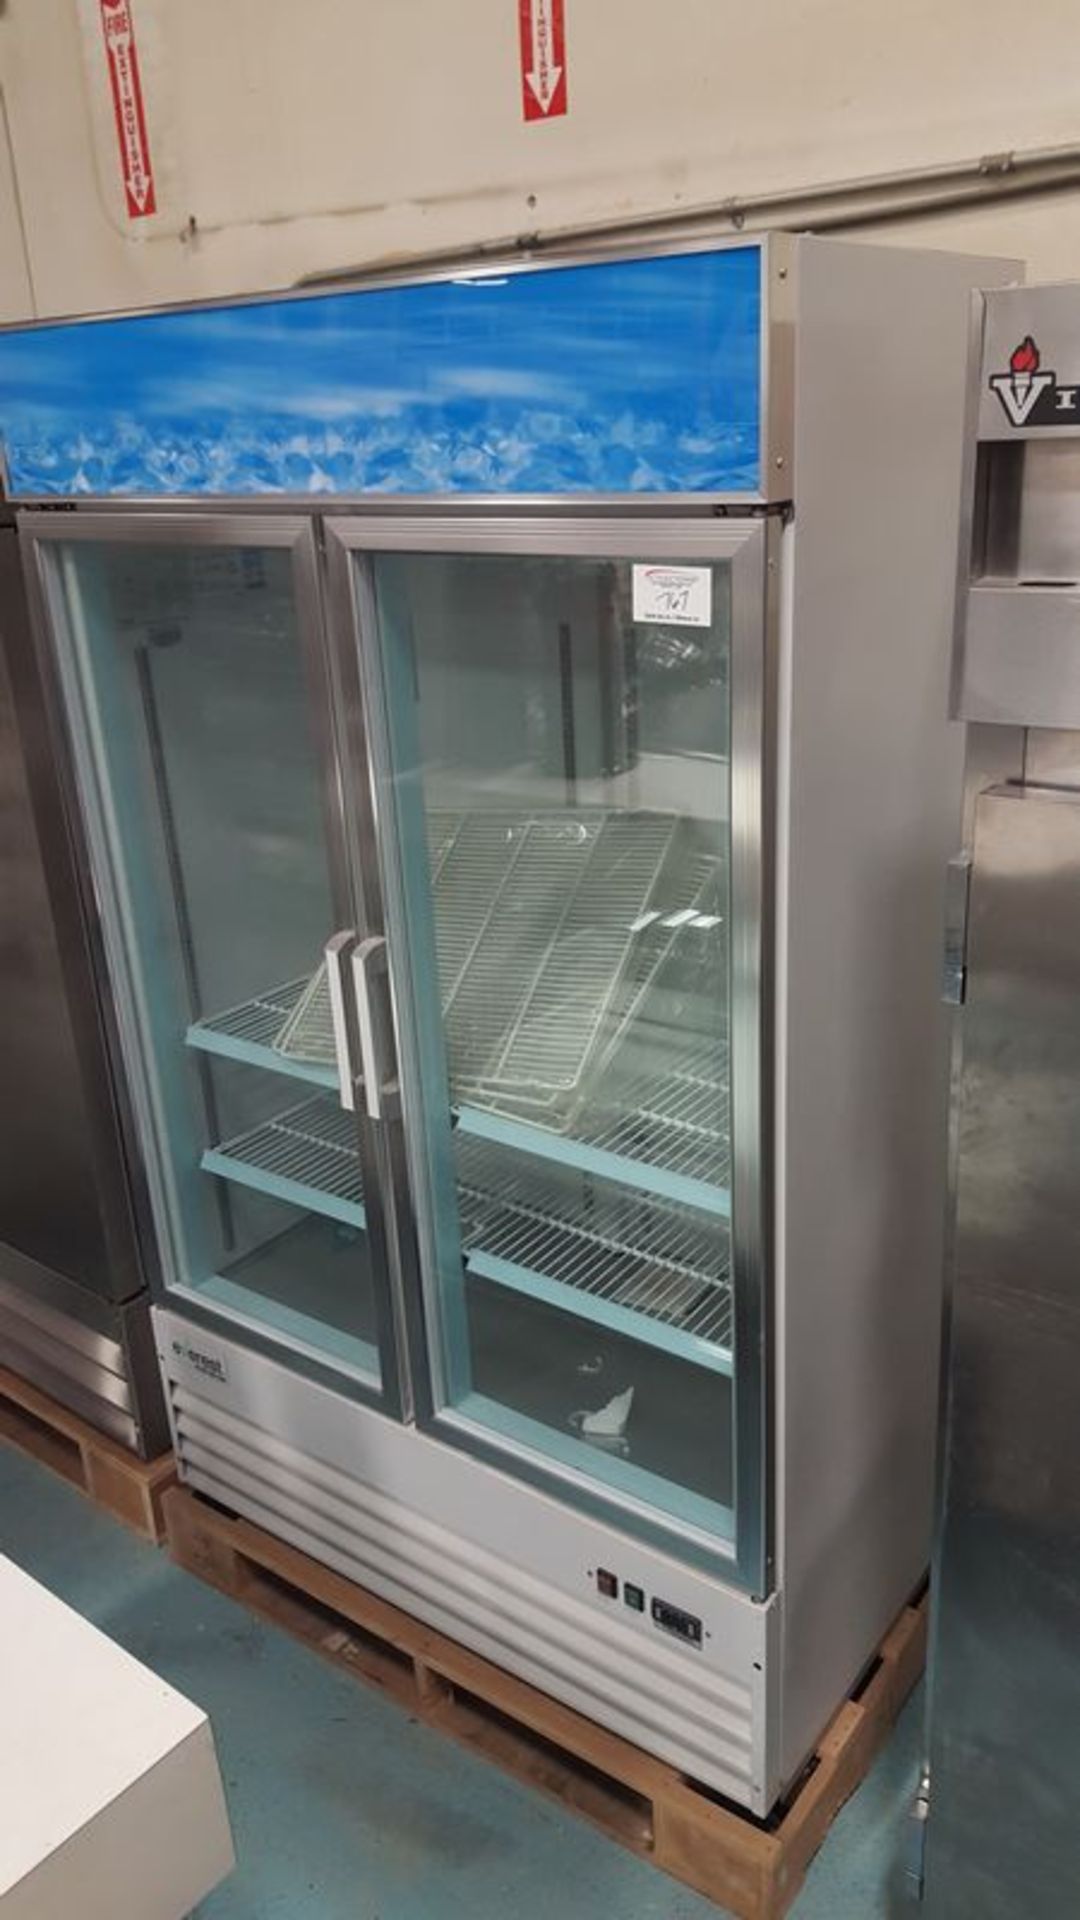 Everest 2 Door display freezer - on original skid - New Price $2995.00